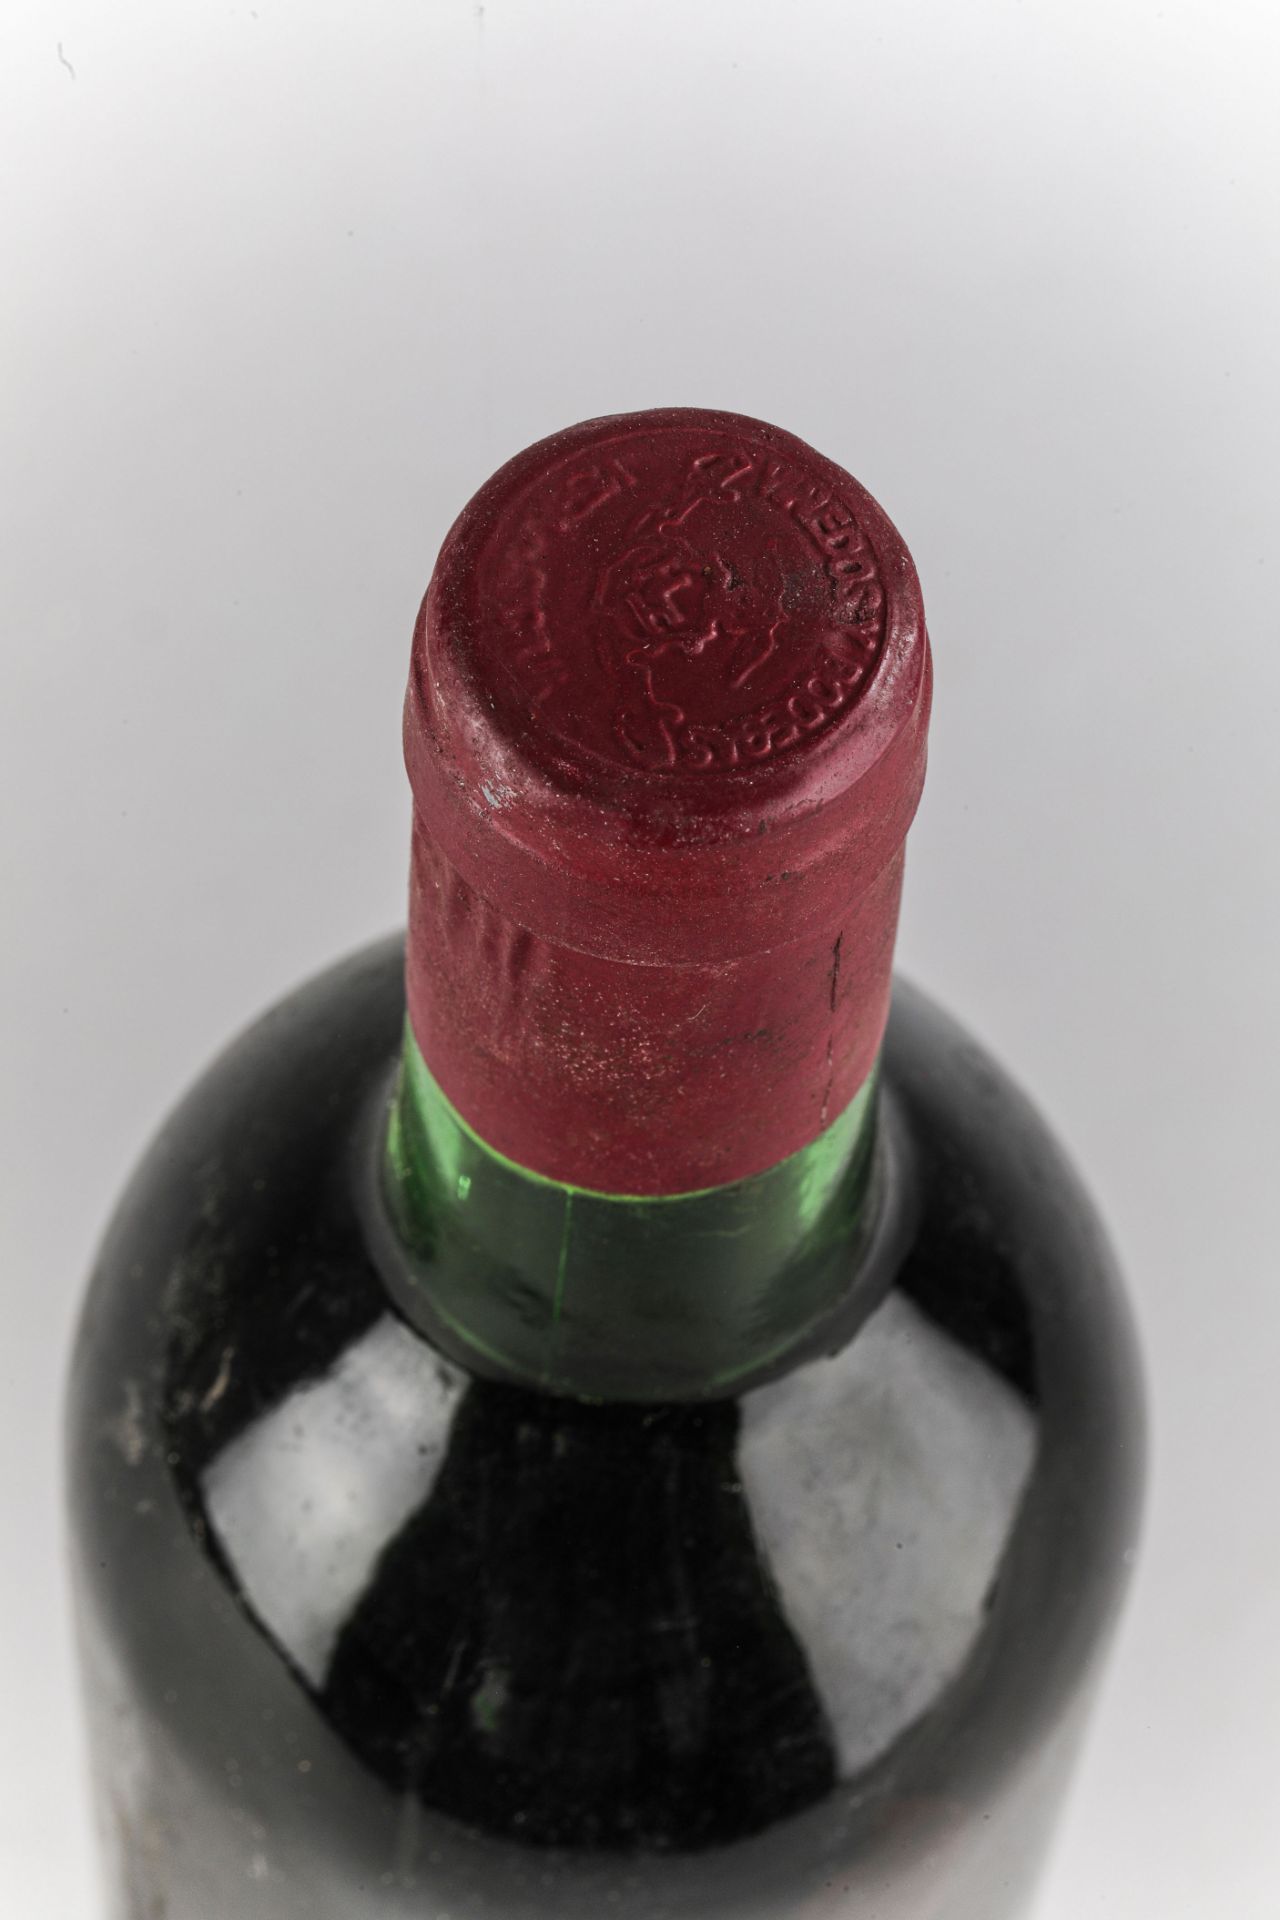 VEGA SICILIA UNICO. 1972. Ribera del Duero. Bouteille N°18333 sur production 66 500 bouteilles. - Image 4 of 4